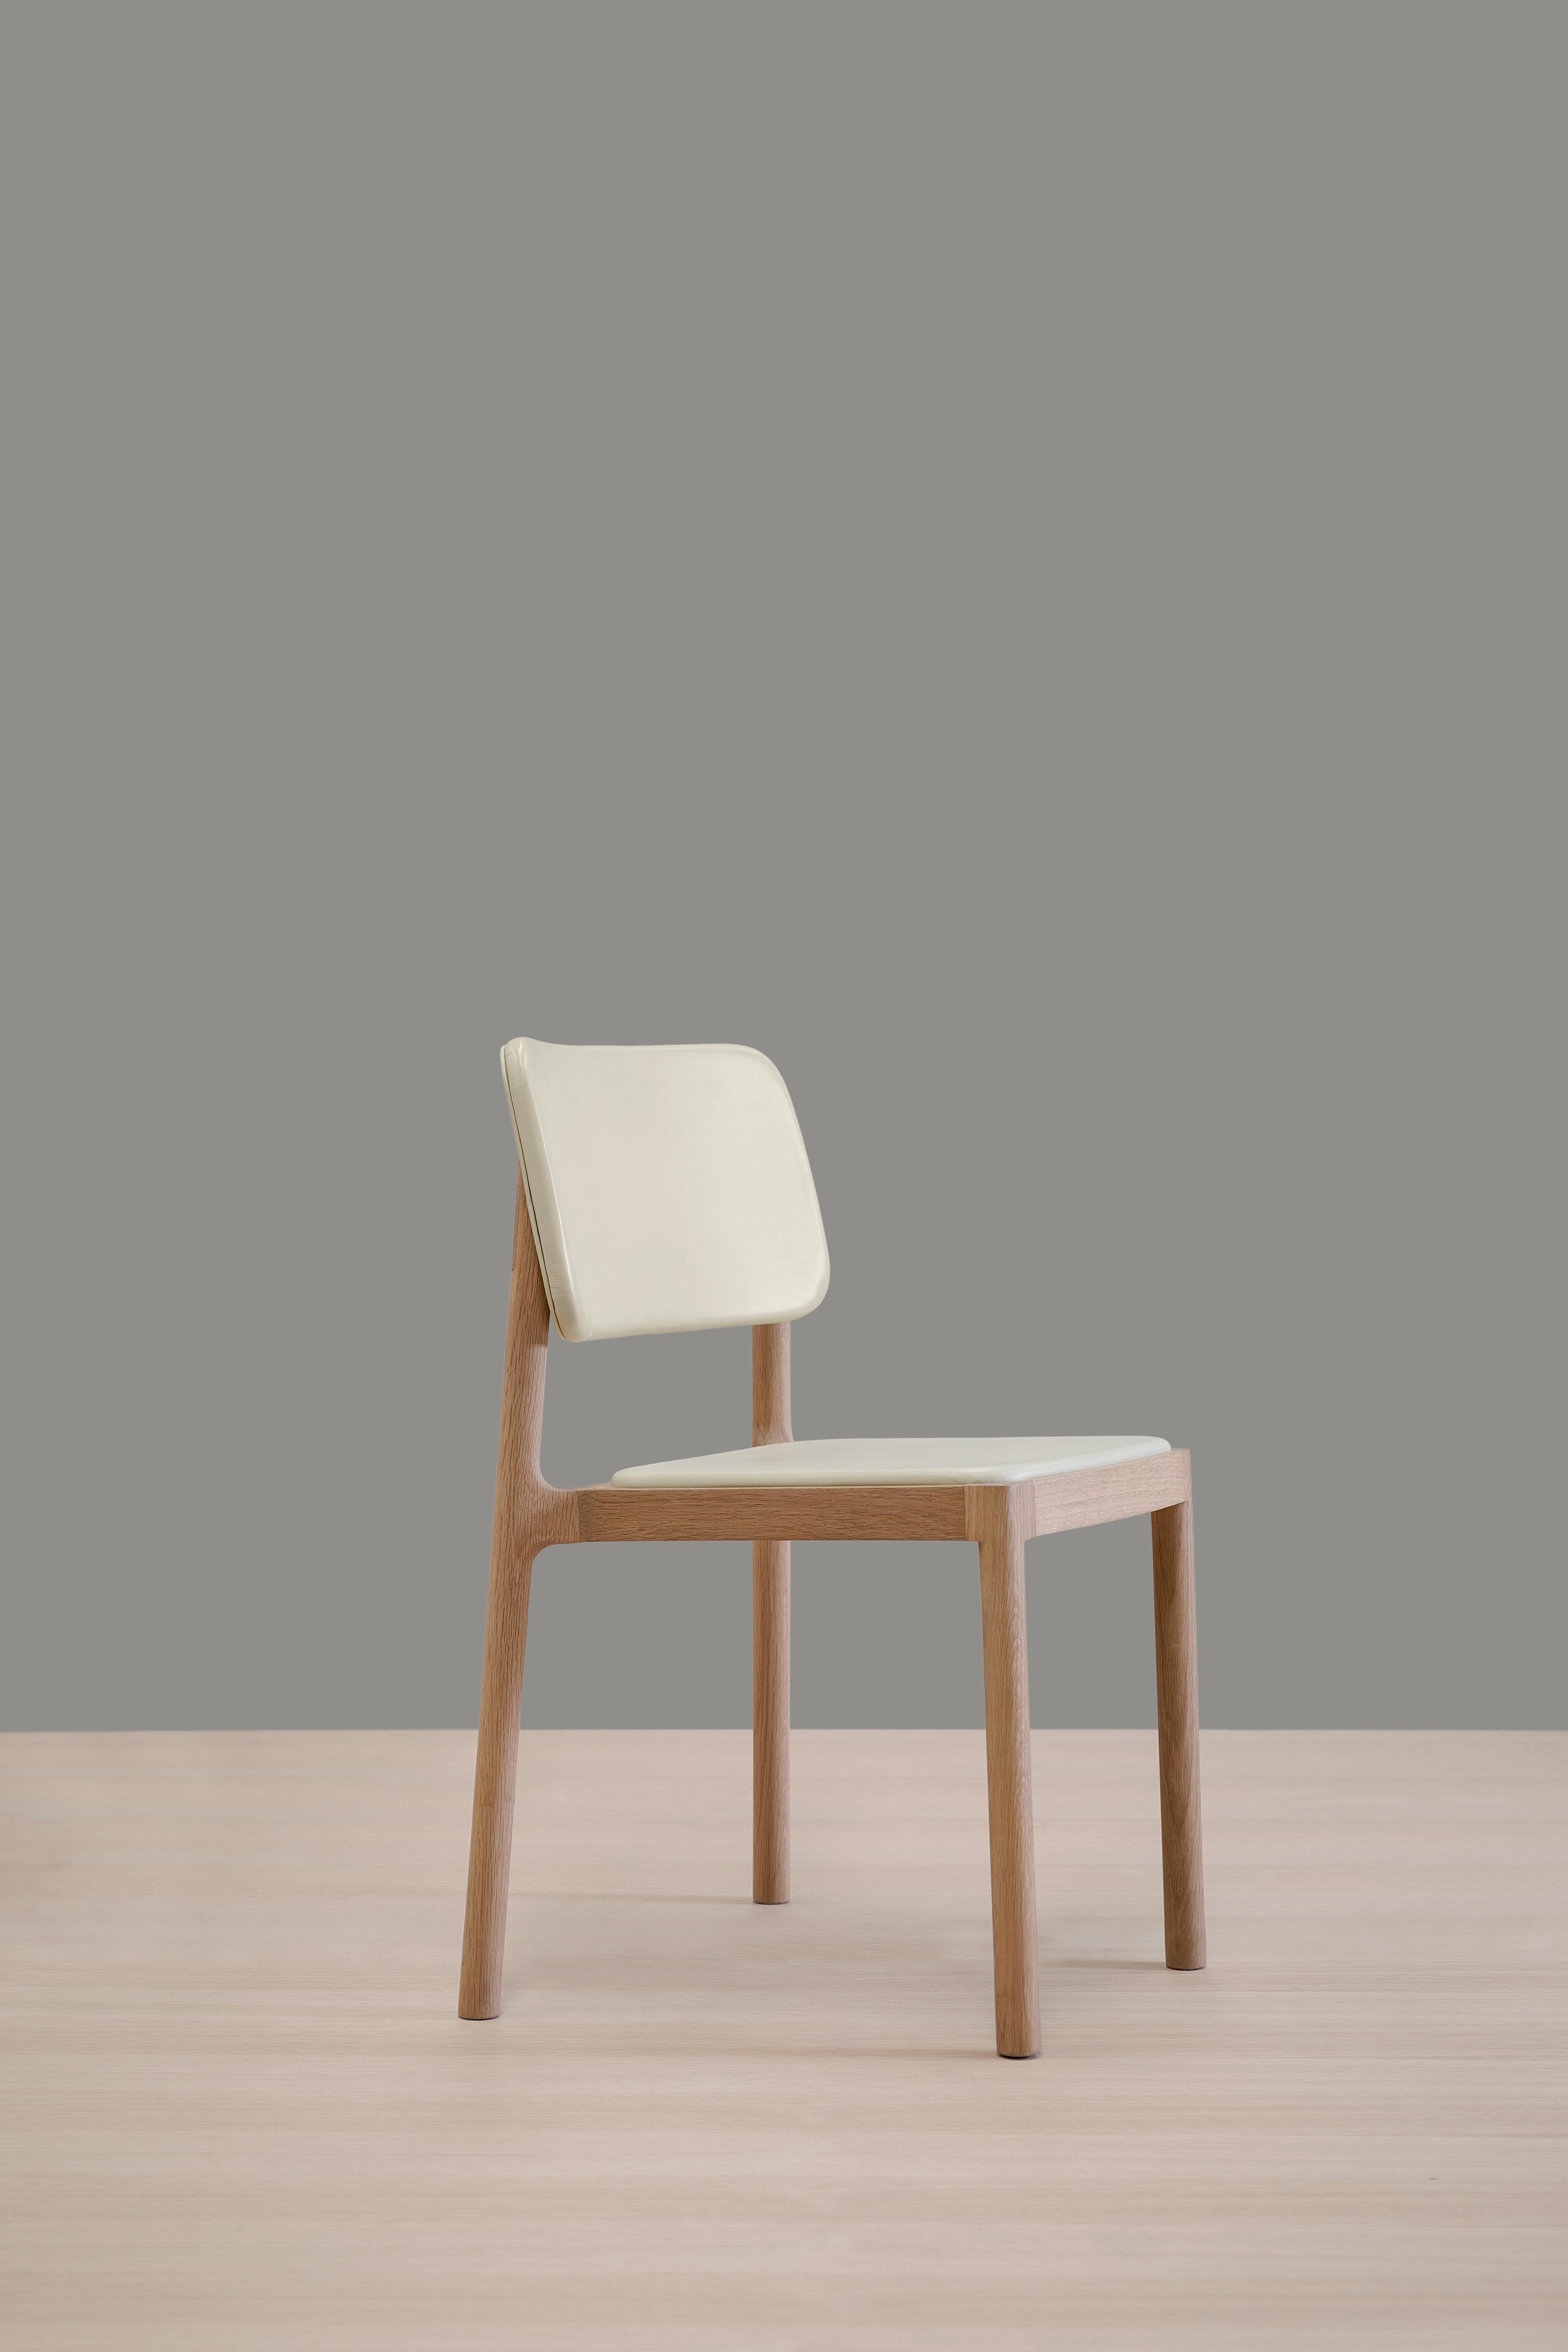 Chaise de salle à manger Linard par Thai Hua
Dimensions : D 57 x L 48 x H 81 cm
Matériaux : bois de chêne, cuir.

Chaise de salle à manger en chêne blanc vert massif et cuir.

Thai Hua est un designer industriel originaire du Vietnam formé en